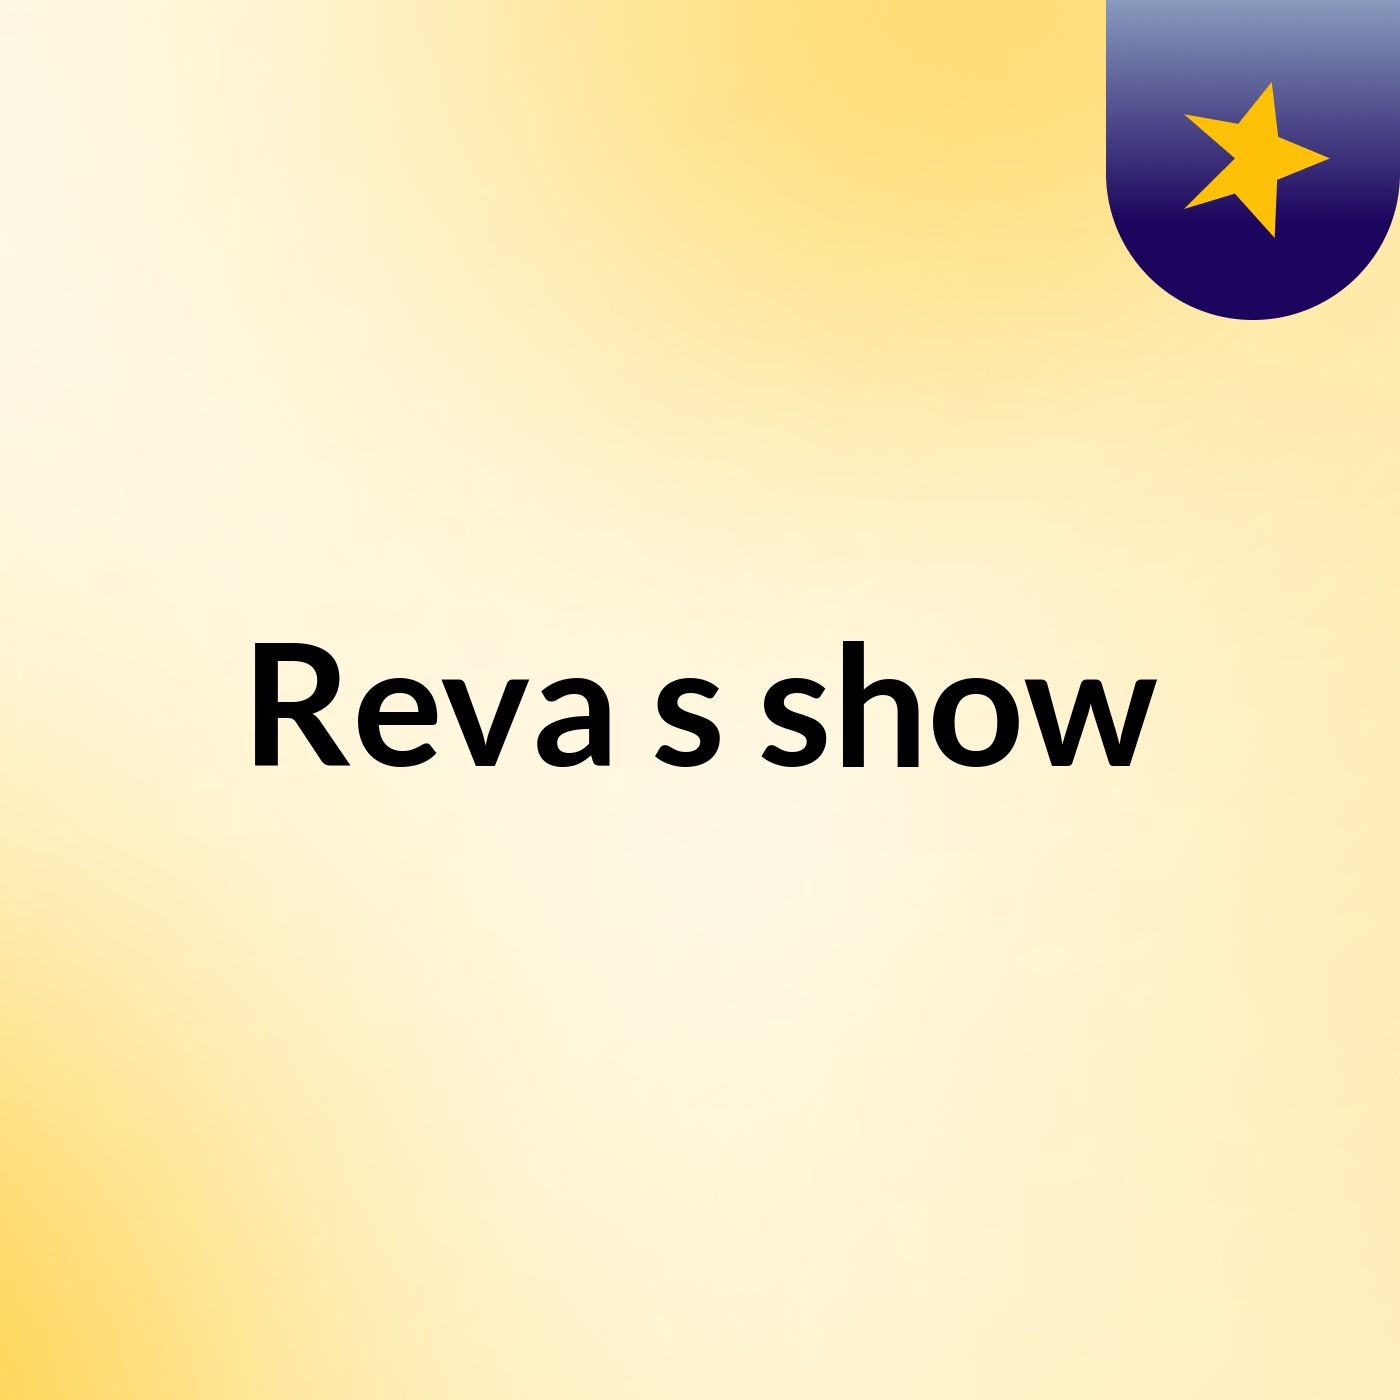 Reva's show